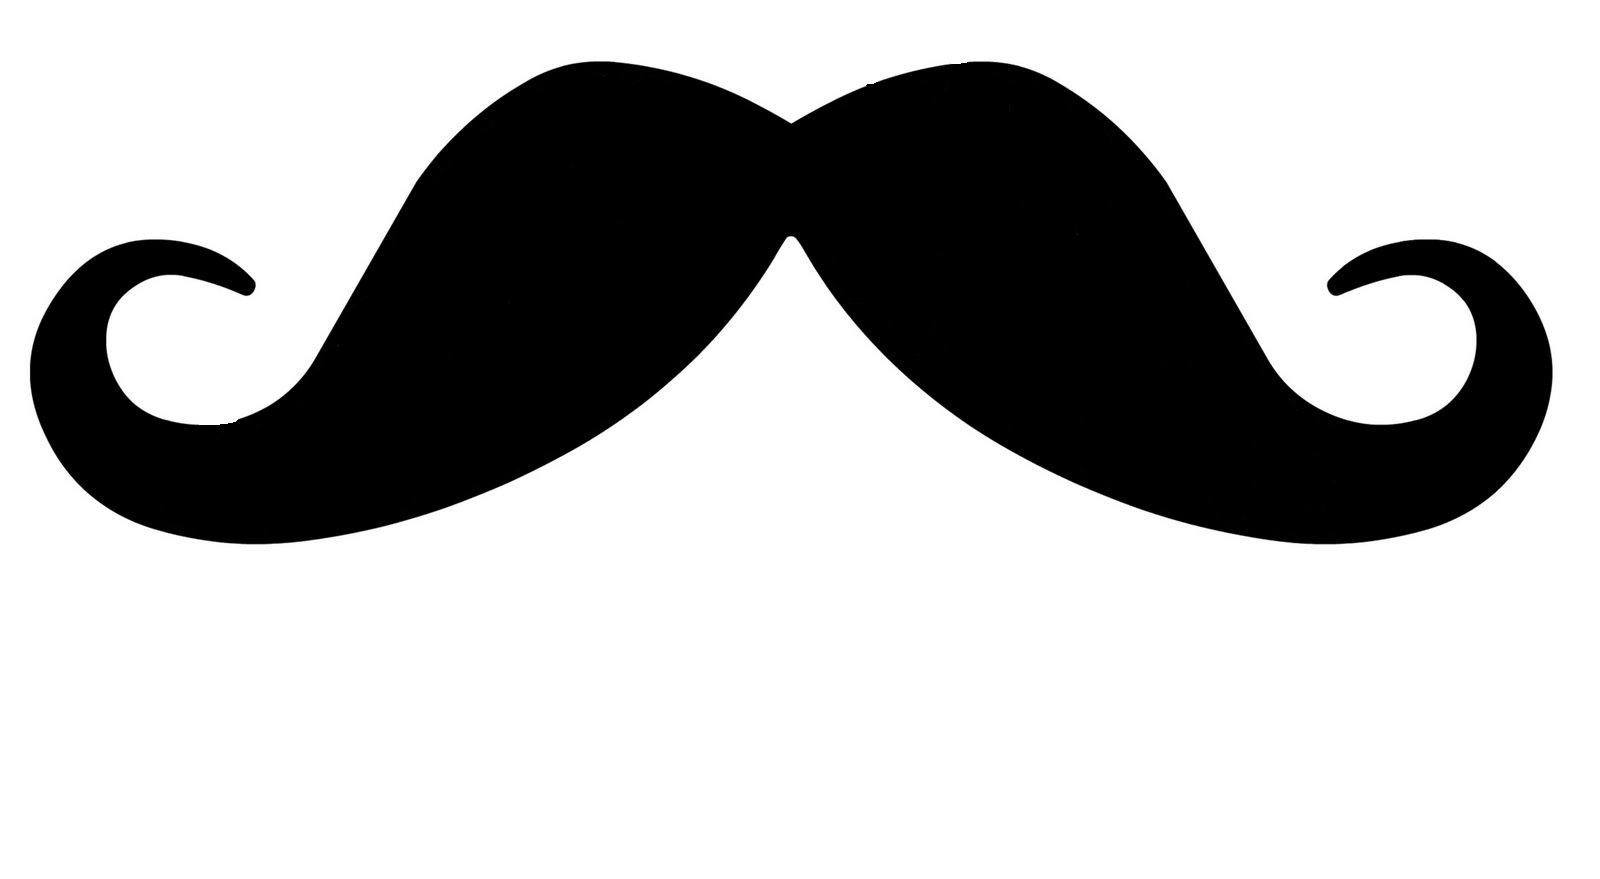 Moustache Outline